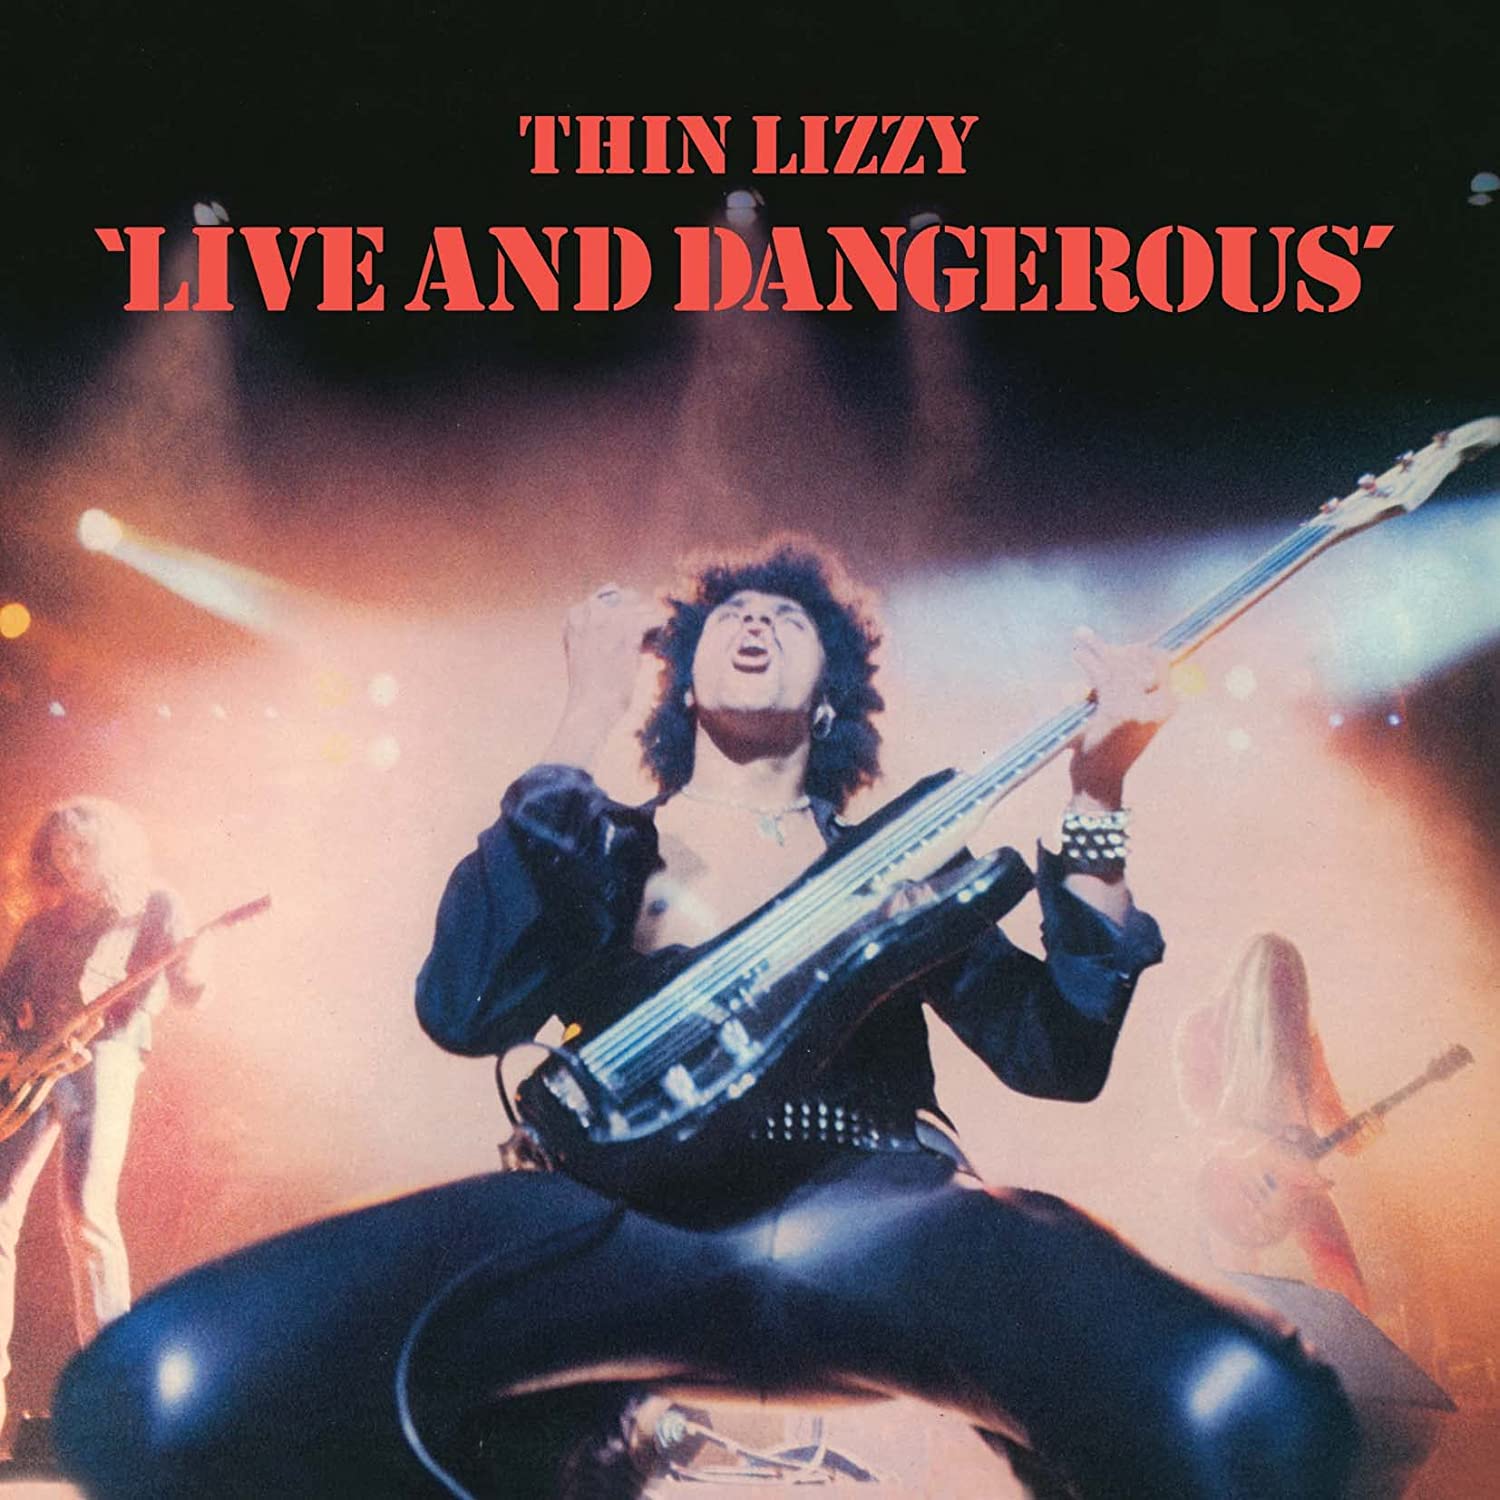 Thin Lizzy nuovo album e tour - immagini